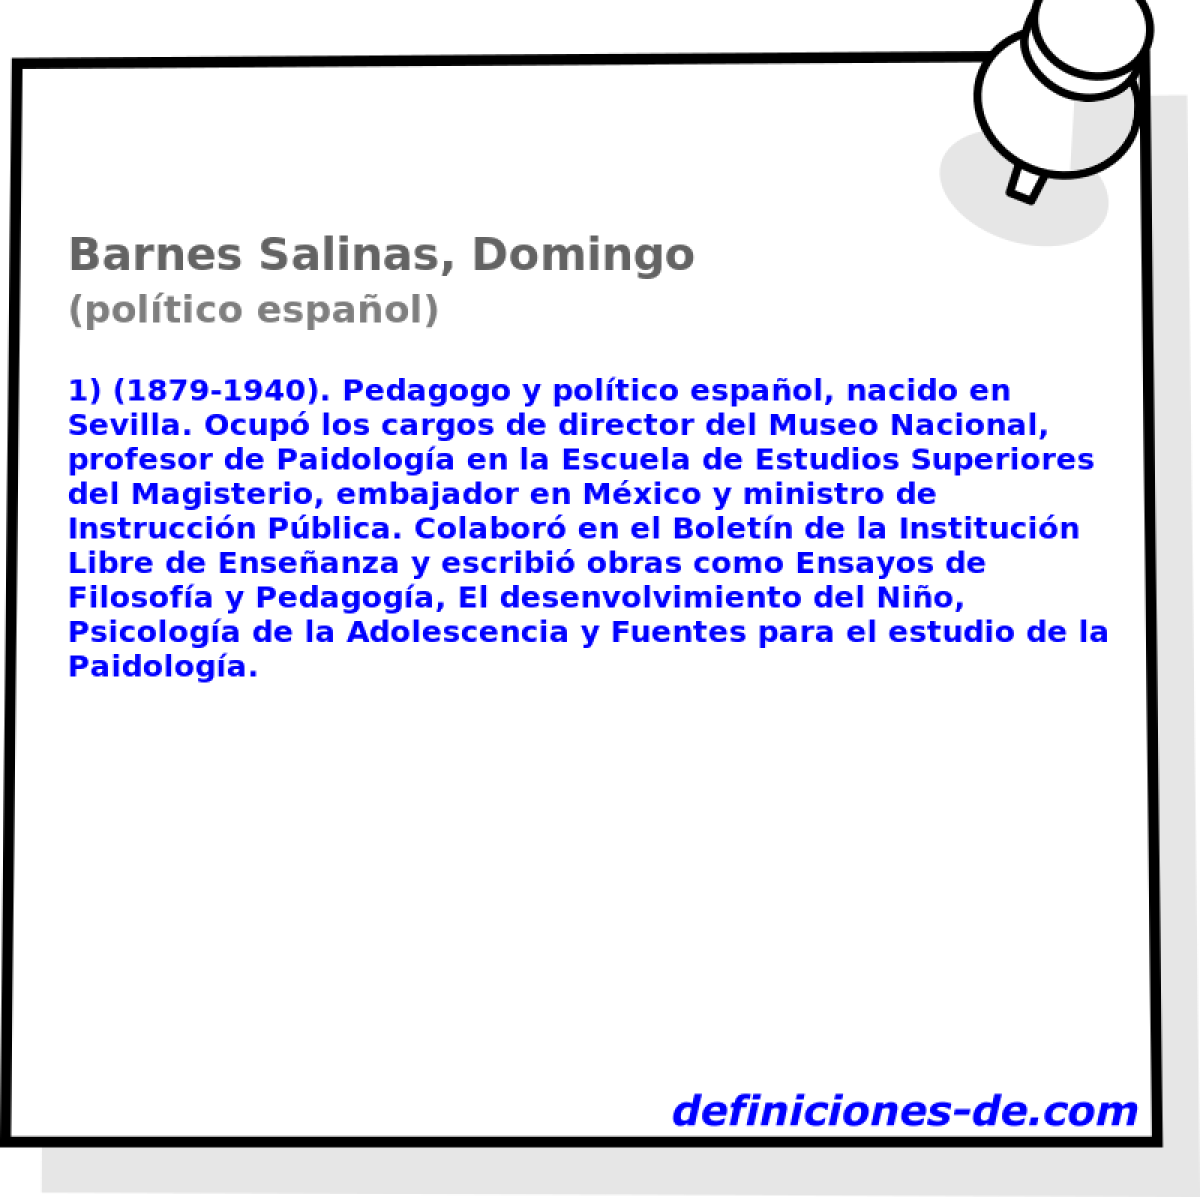 Barnes Salinas, Domingo (poltico espaol)